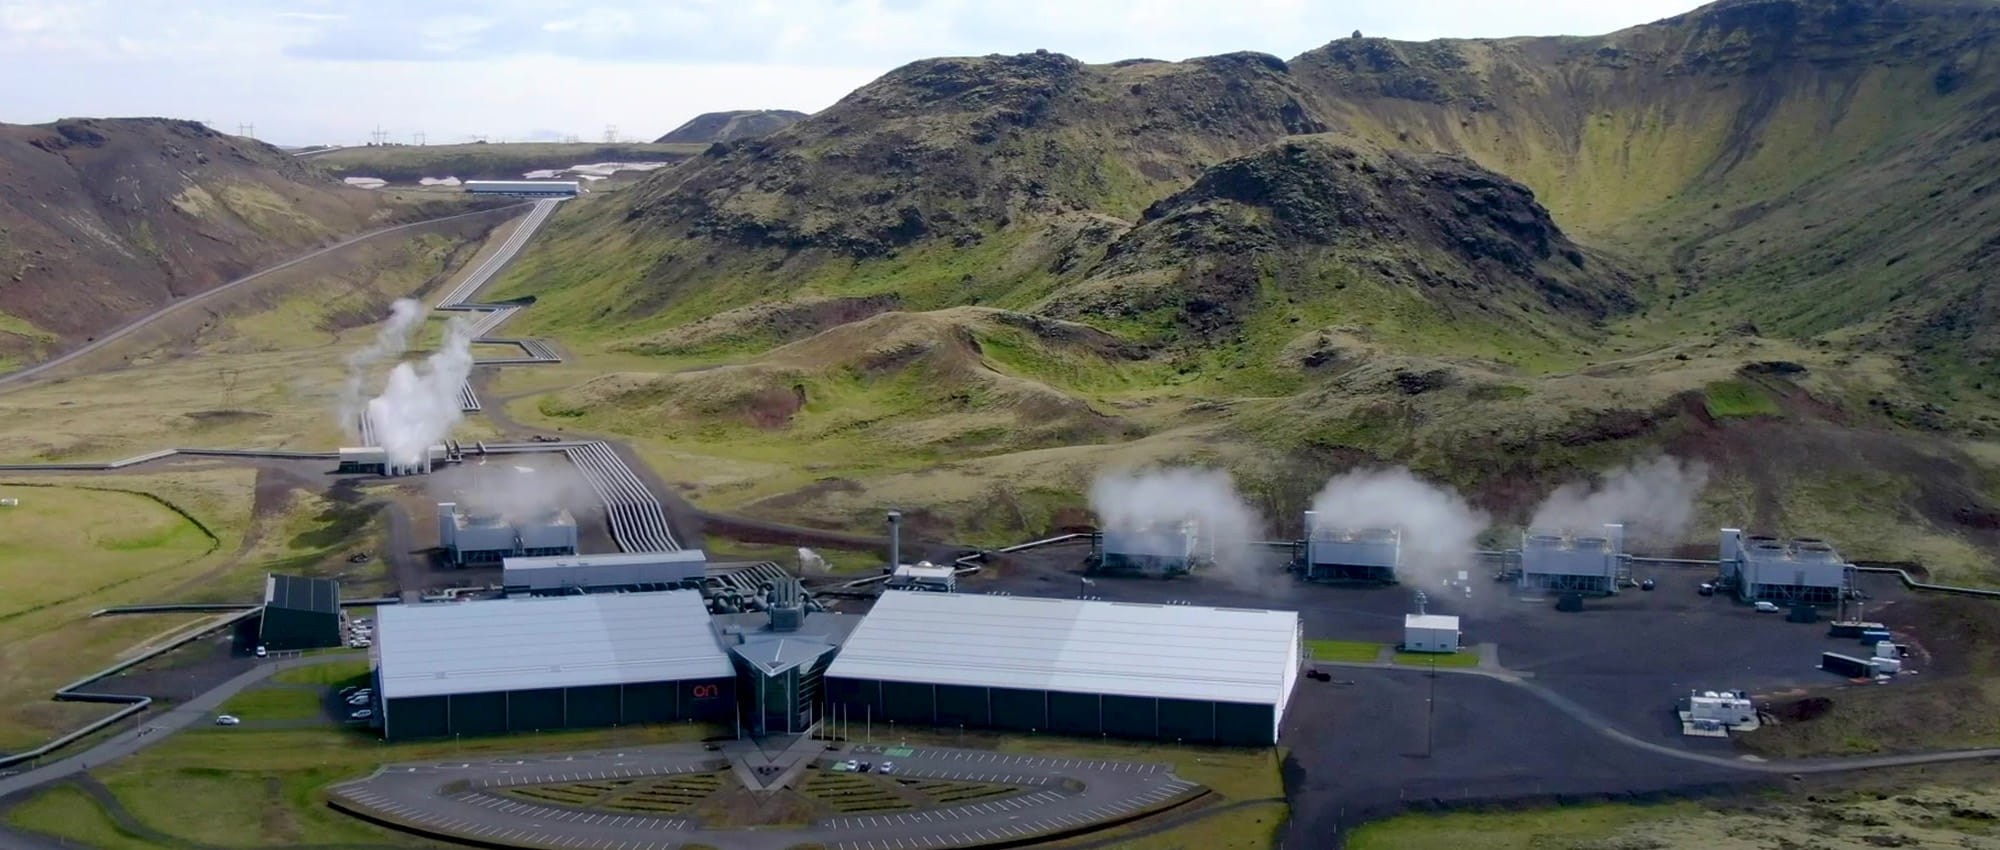 Videoteaser: Gebäudekomplex umgeben von isländischer Landschaft